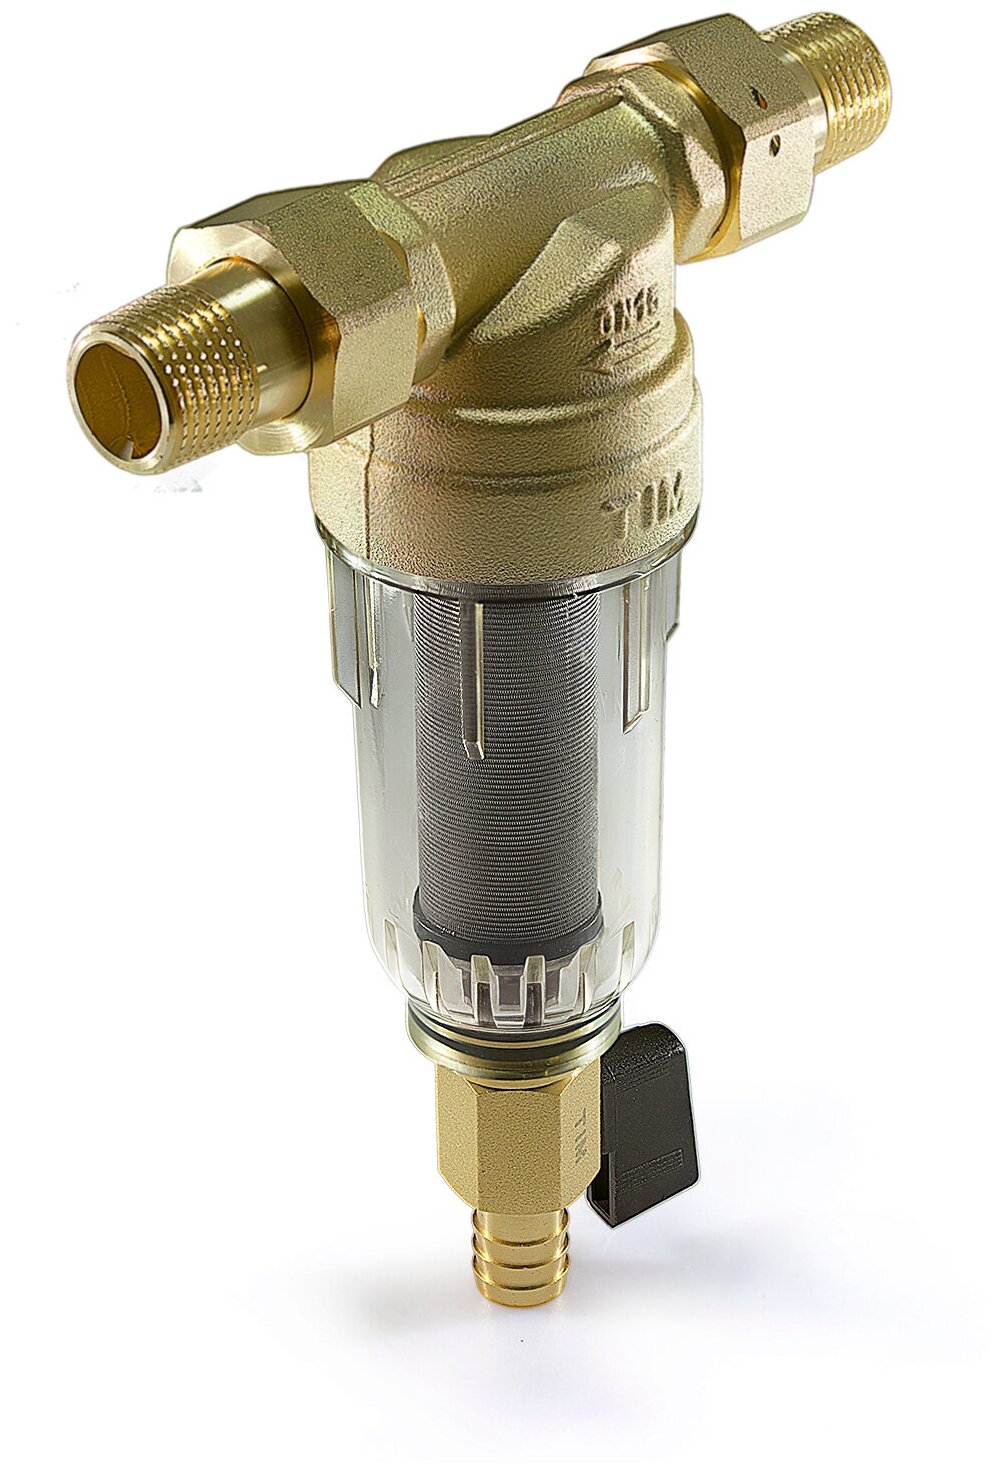 Фильтр механической очистки Tim JH-1004 муфтовый (НР/НР), латунь, со сливом, с манометром бронза Ду 15 (1/2")